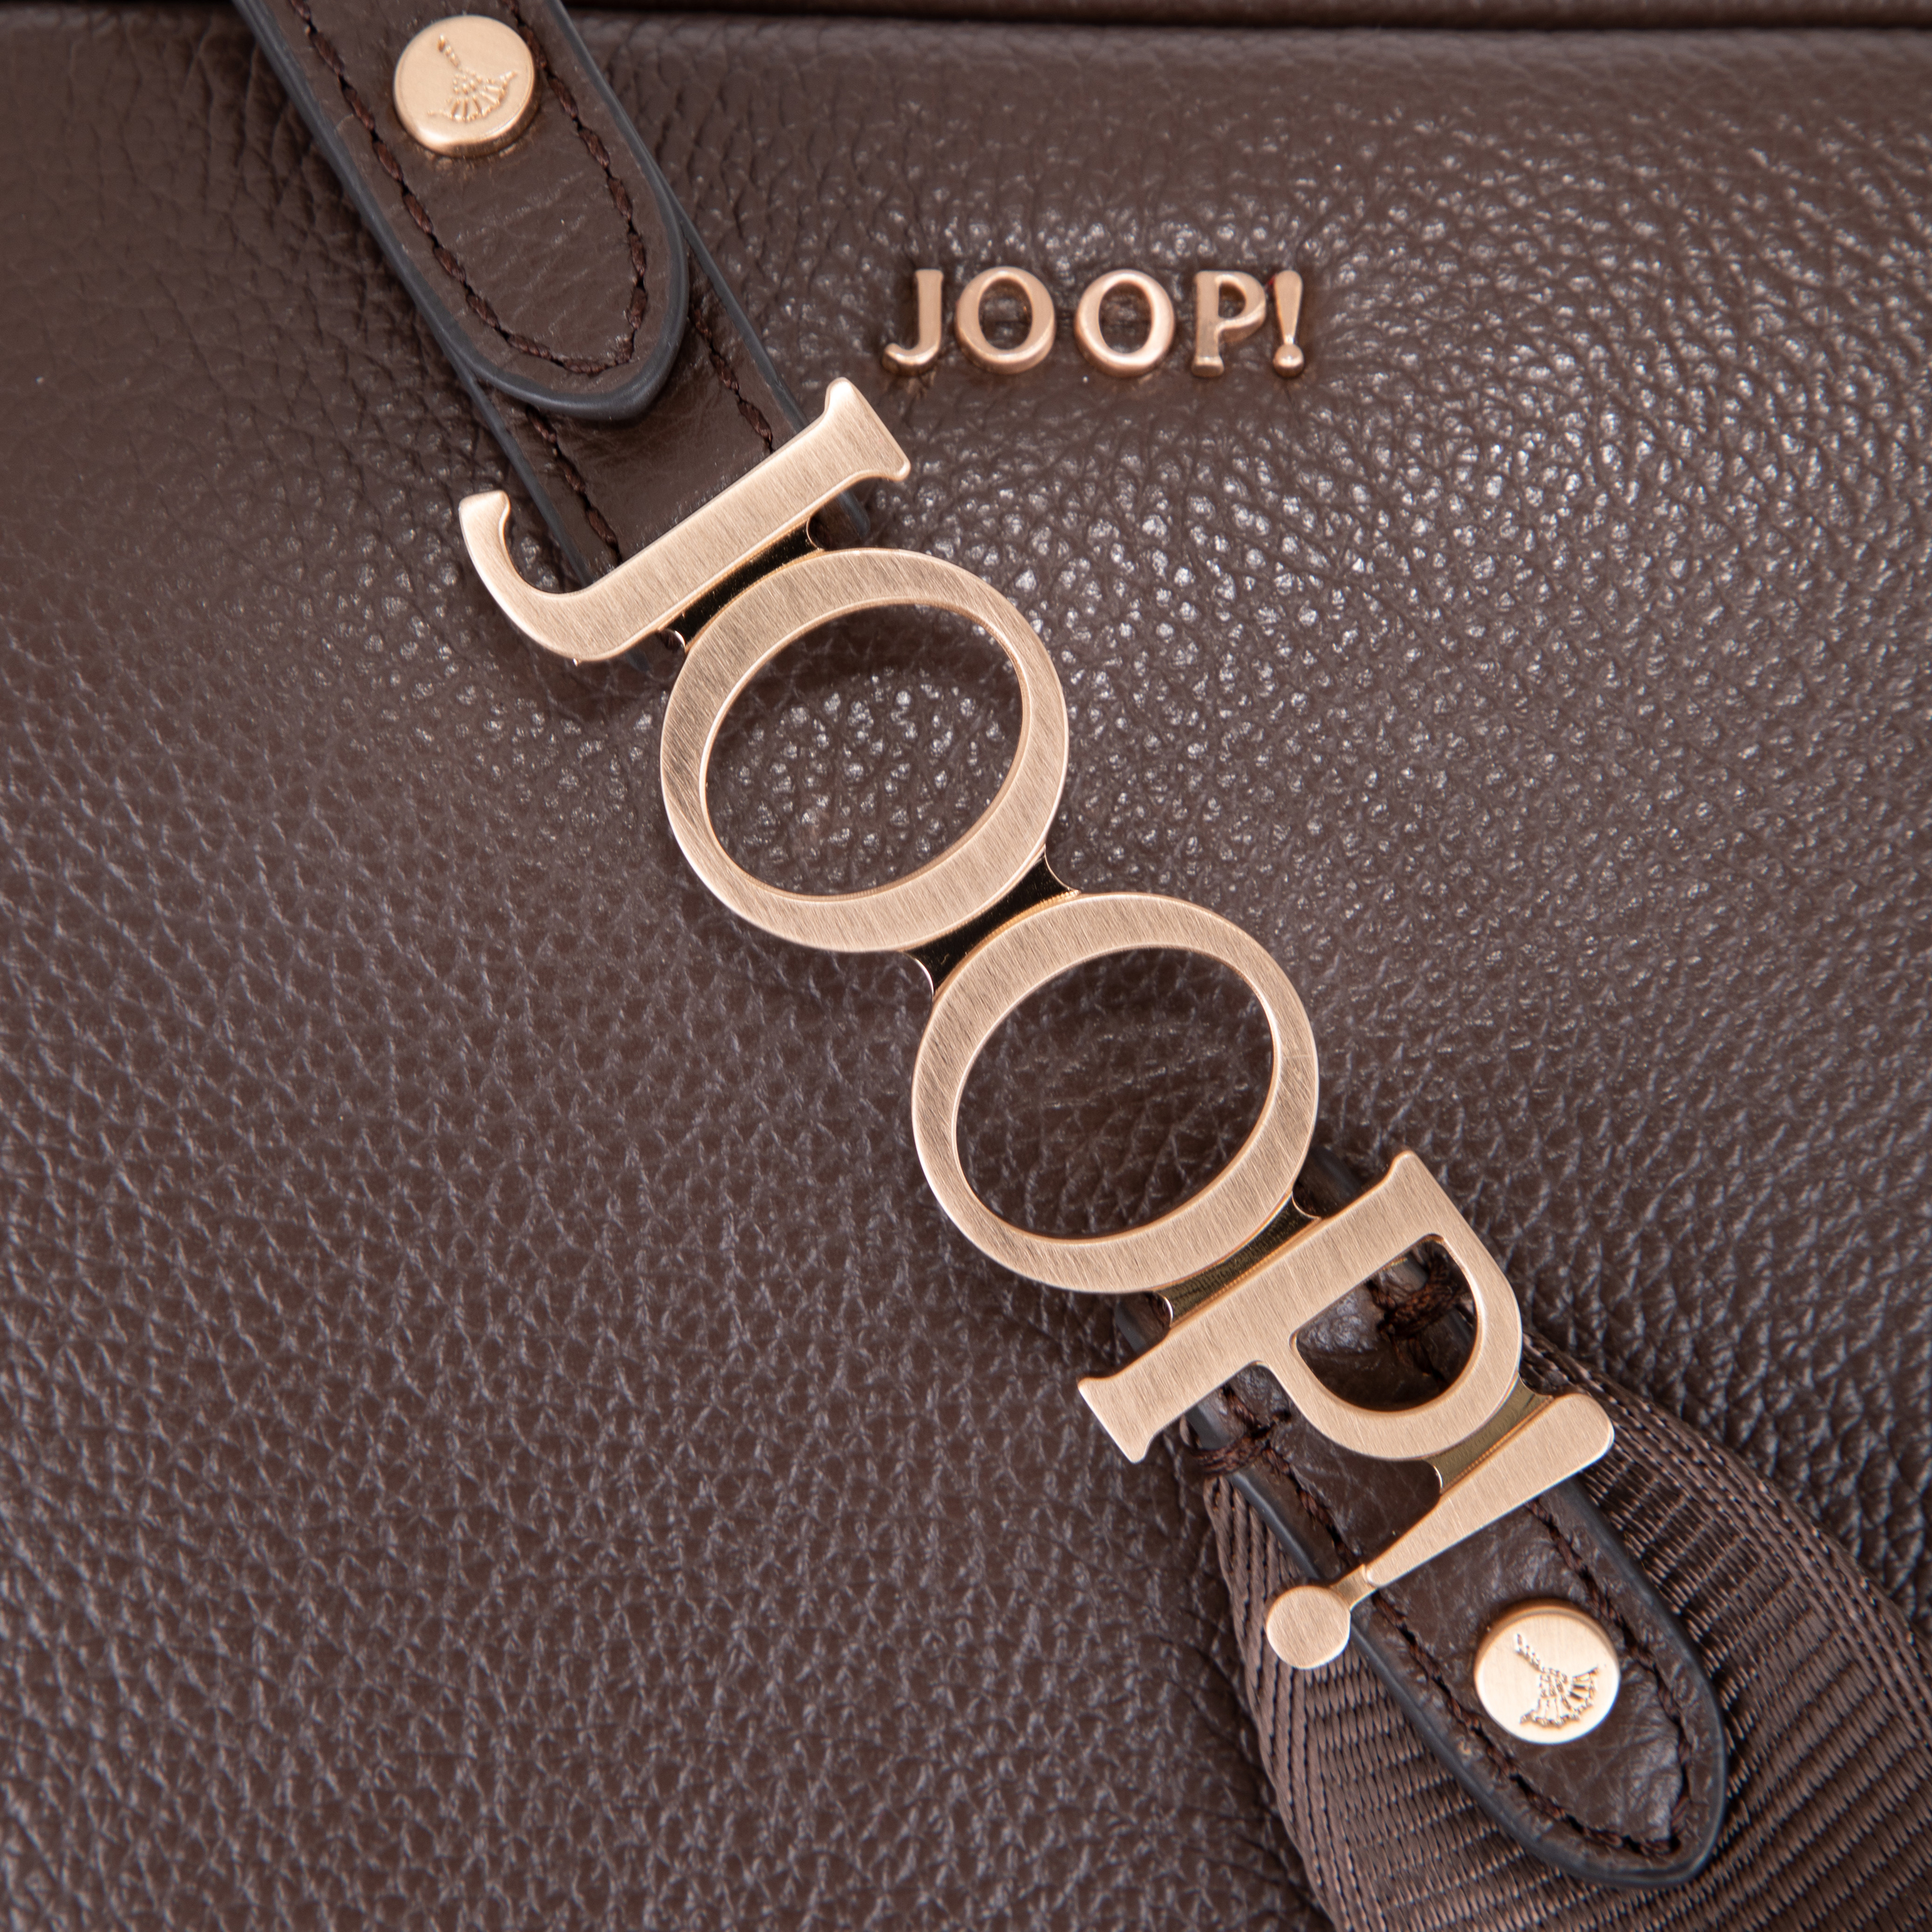 Joop! Vivace Cloe Shoulderbag Shz